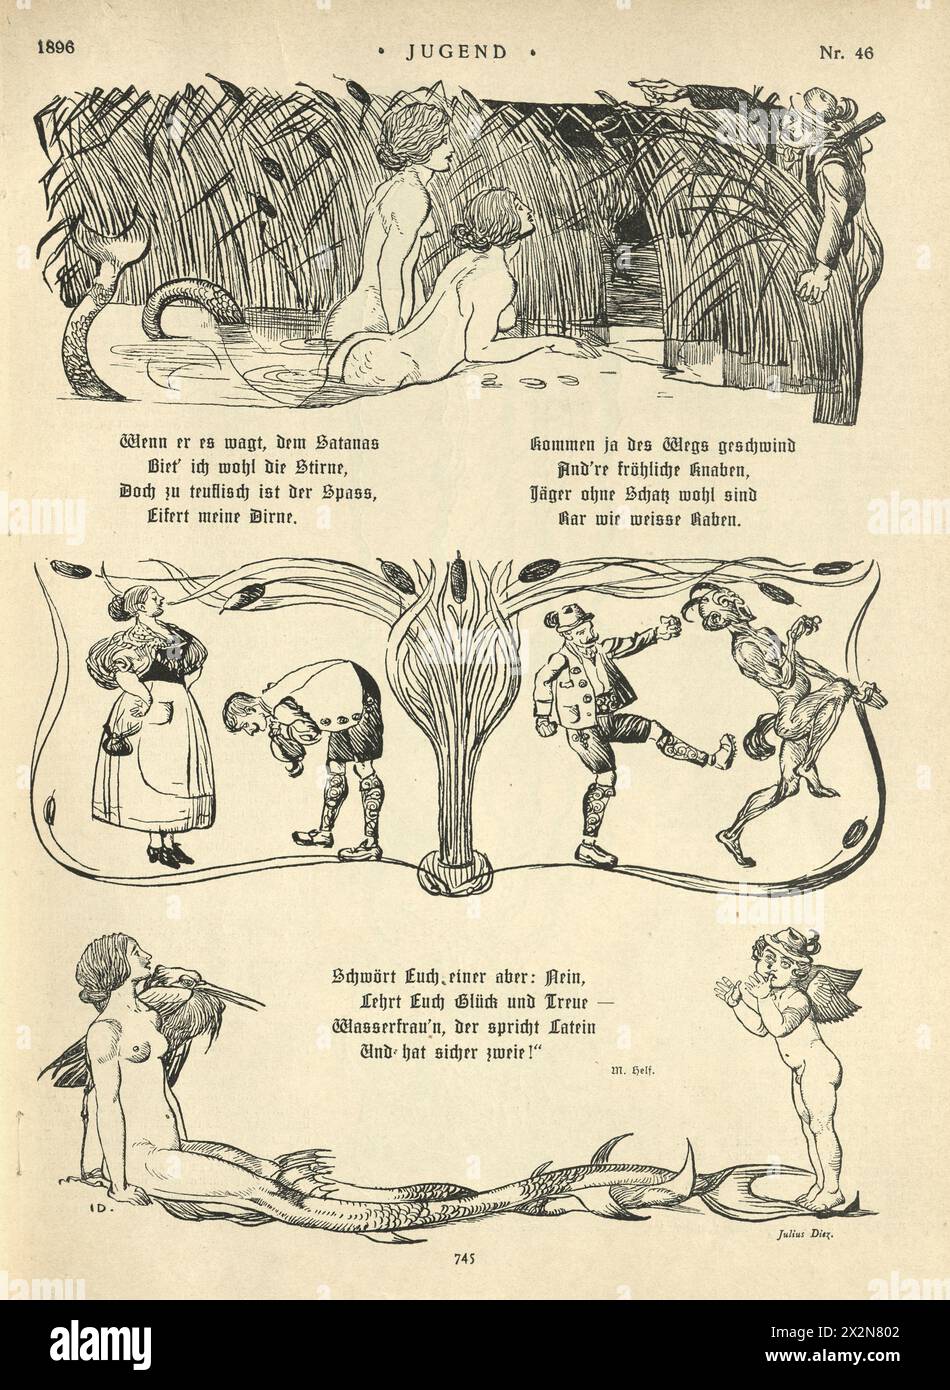 Vintage illustration sirène ou sprite d'eau, fantaisie, conte de fées, mythologie, allemand, Jugendstil, Art Nouveau, années 1890, XIXe siècle. Banque D'Images